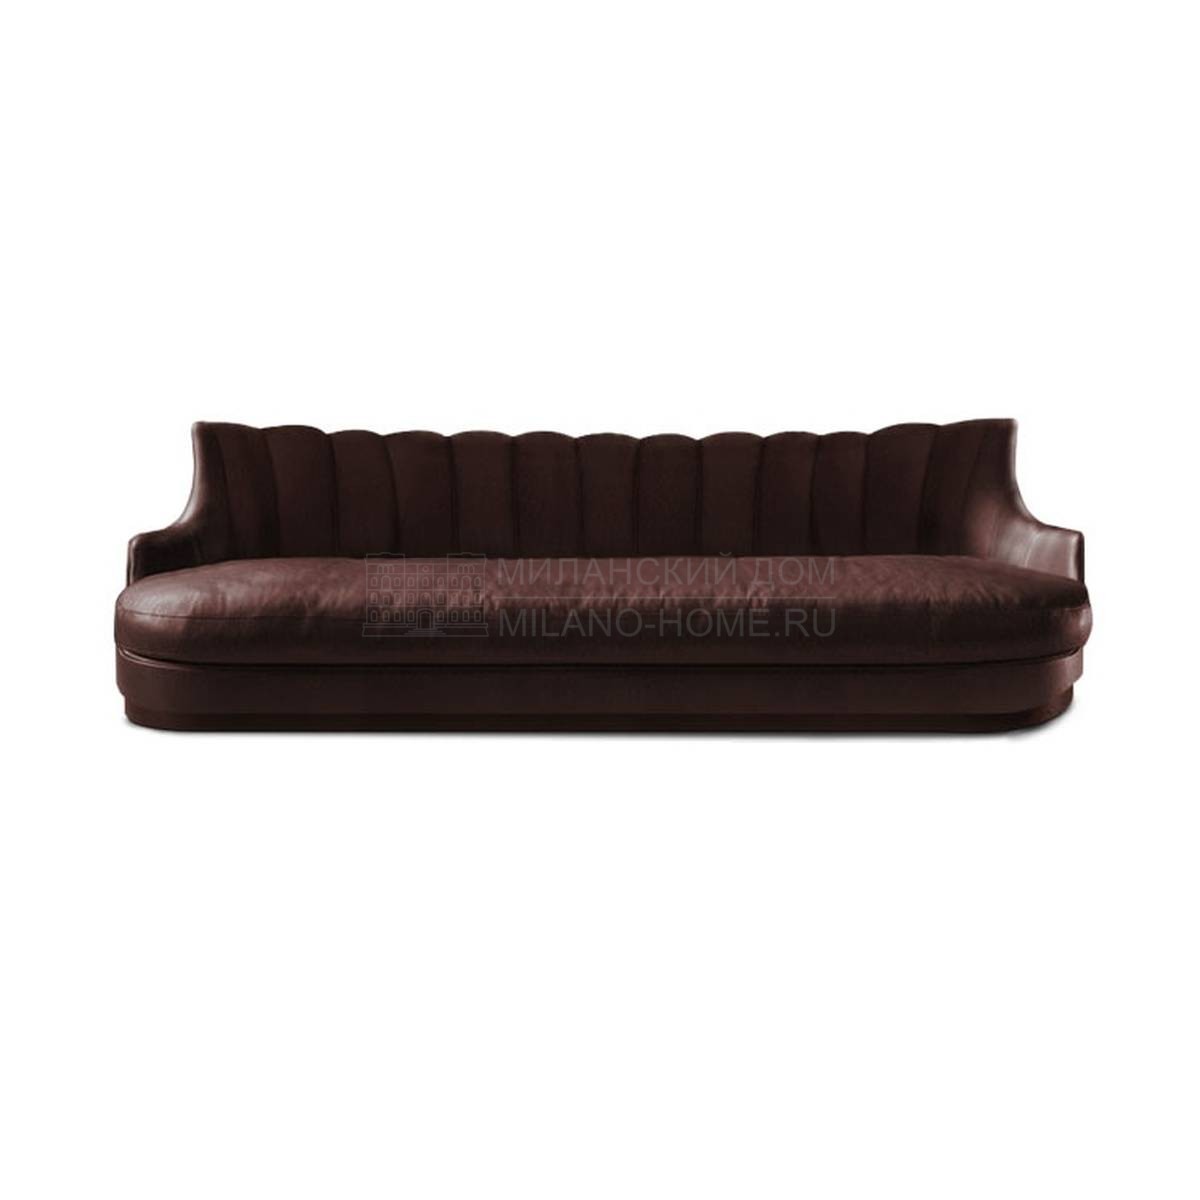 Прямой диван Plum/sofa из Португалии фабрики BRABBU